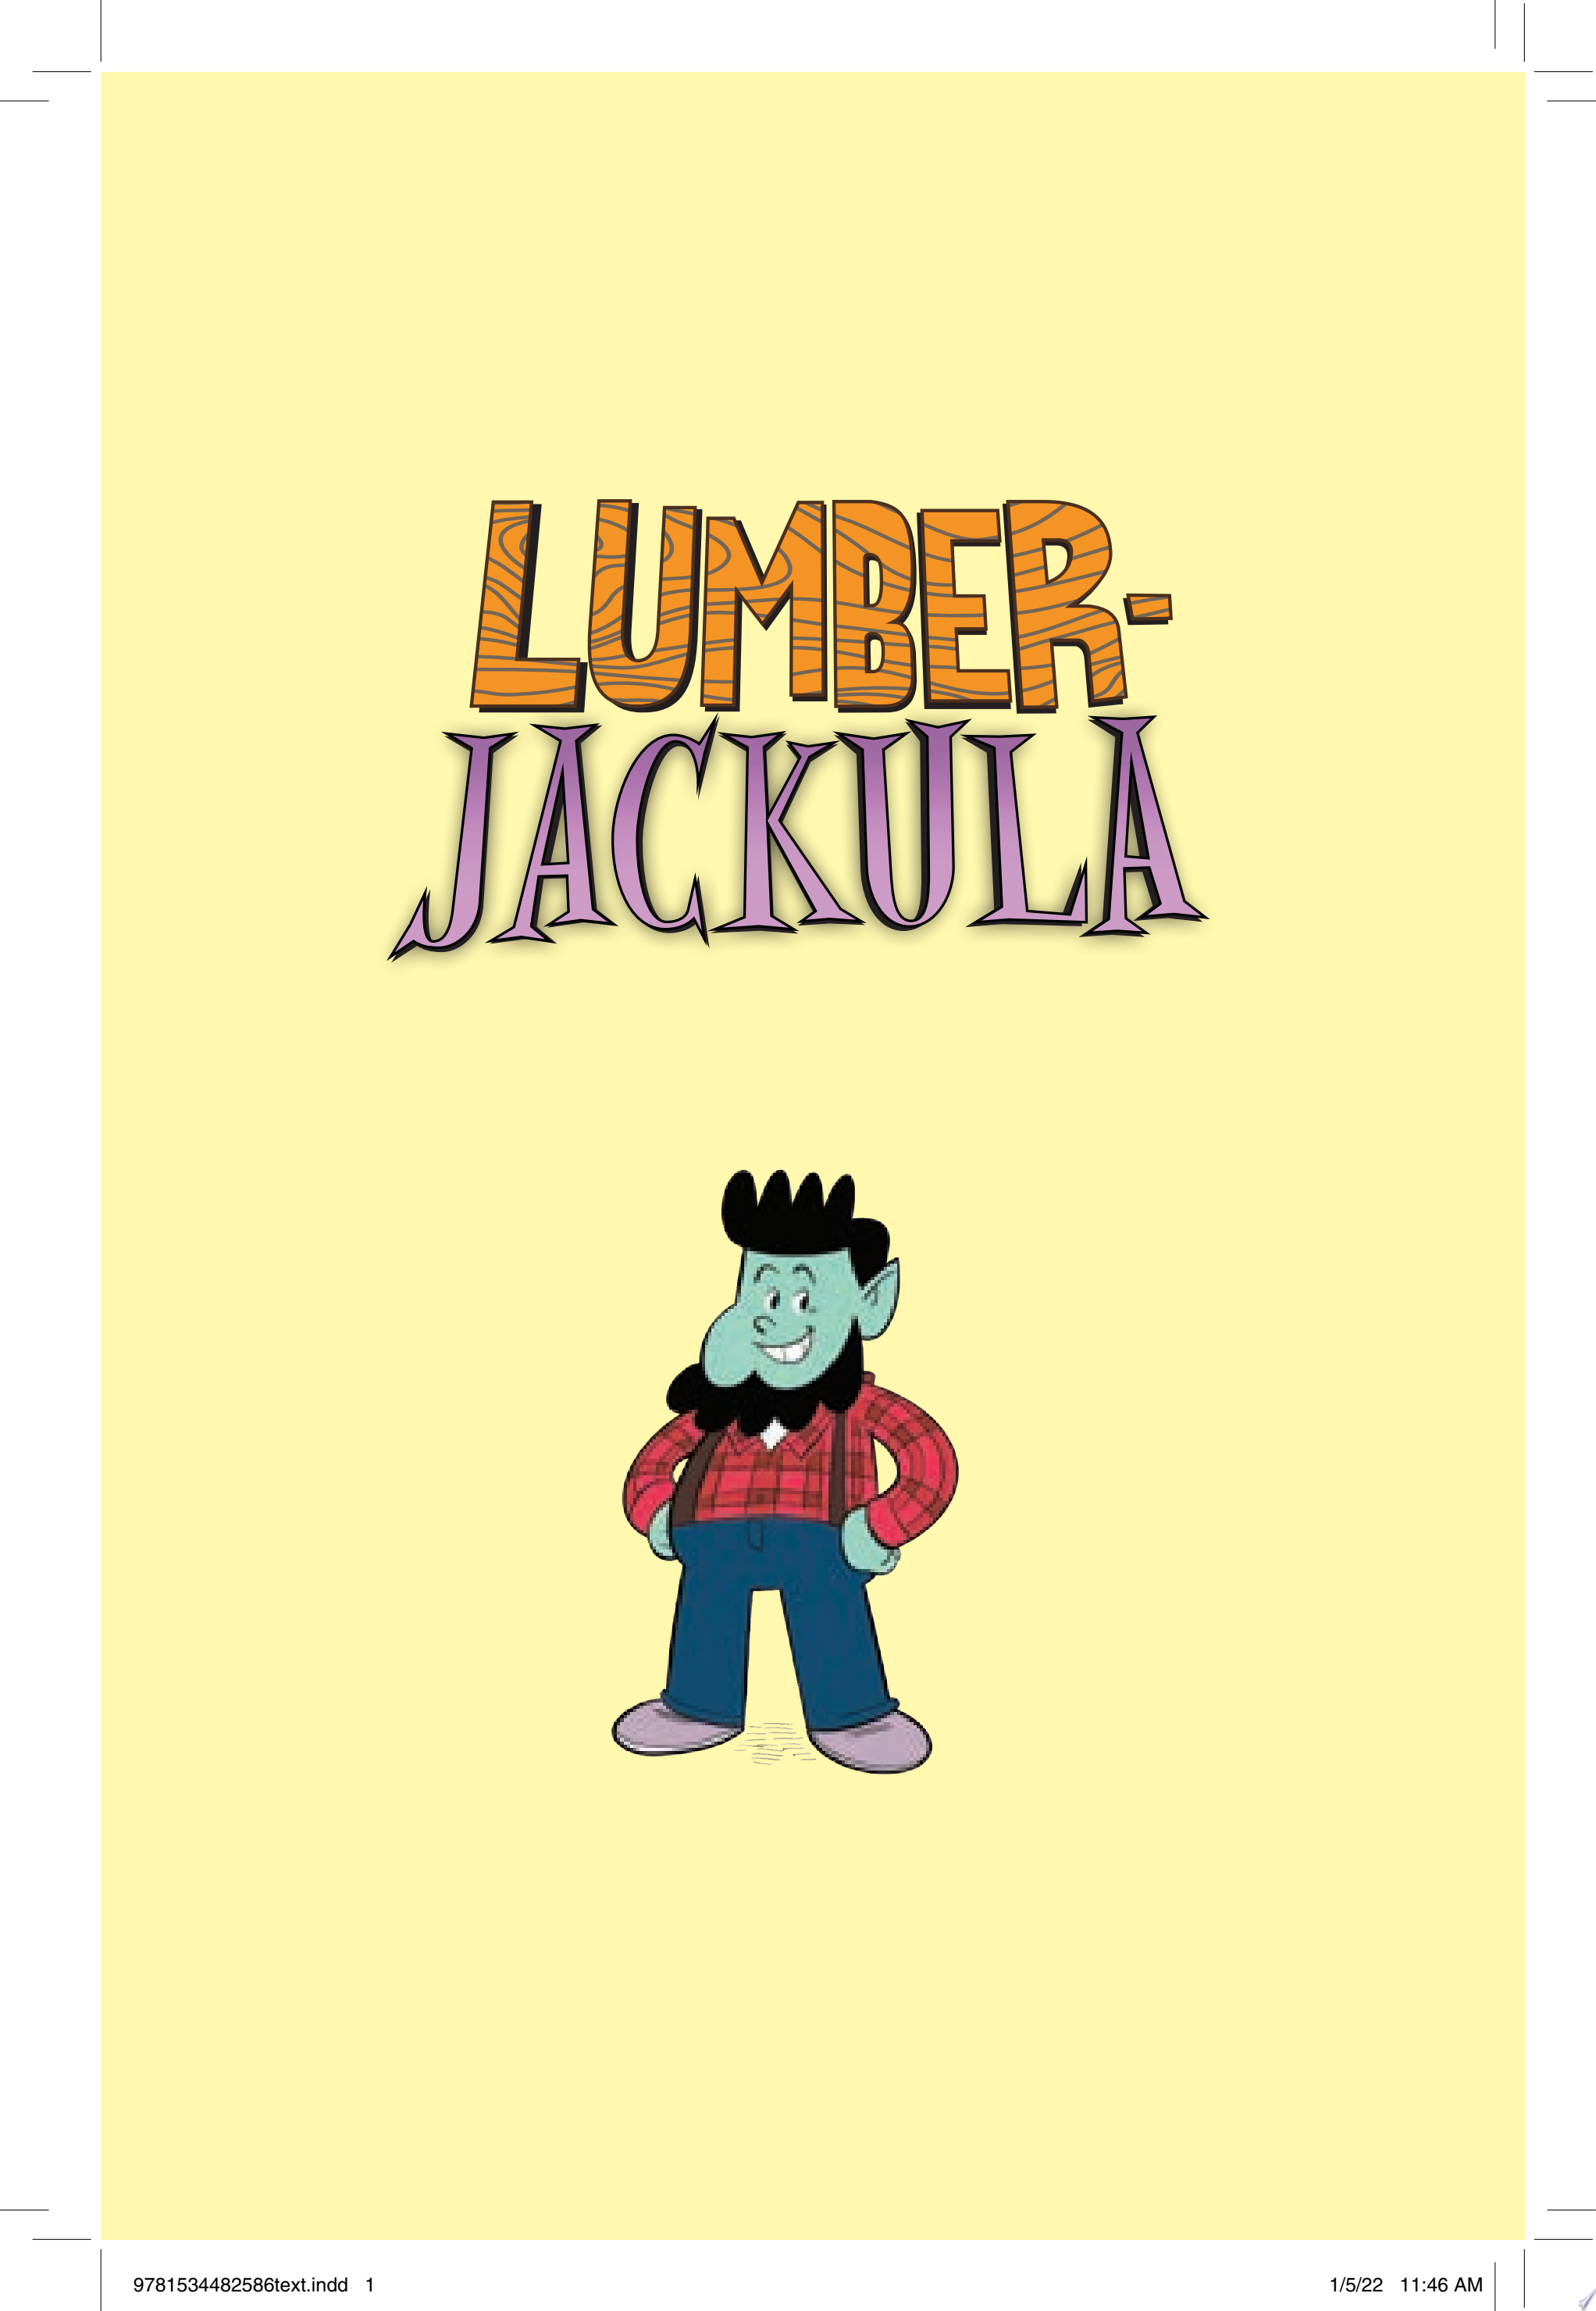 Image for "Lumberjackula"